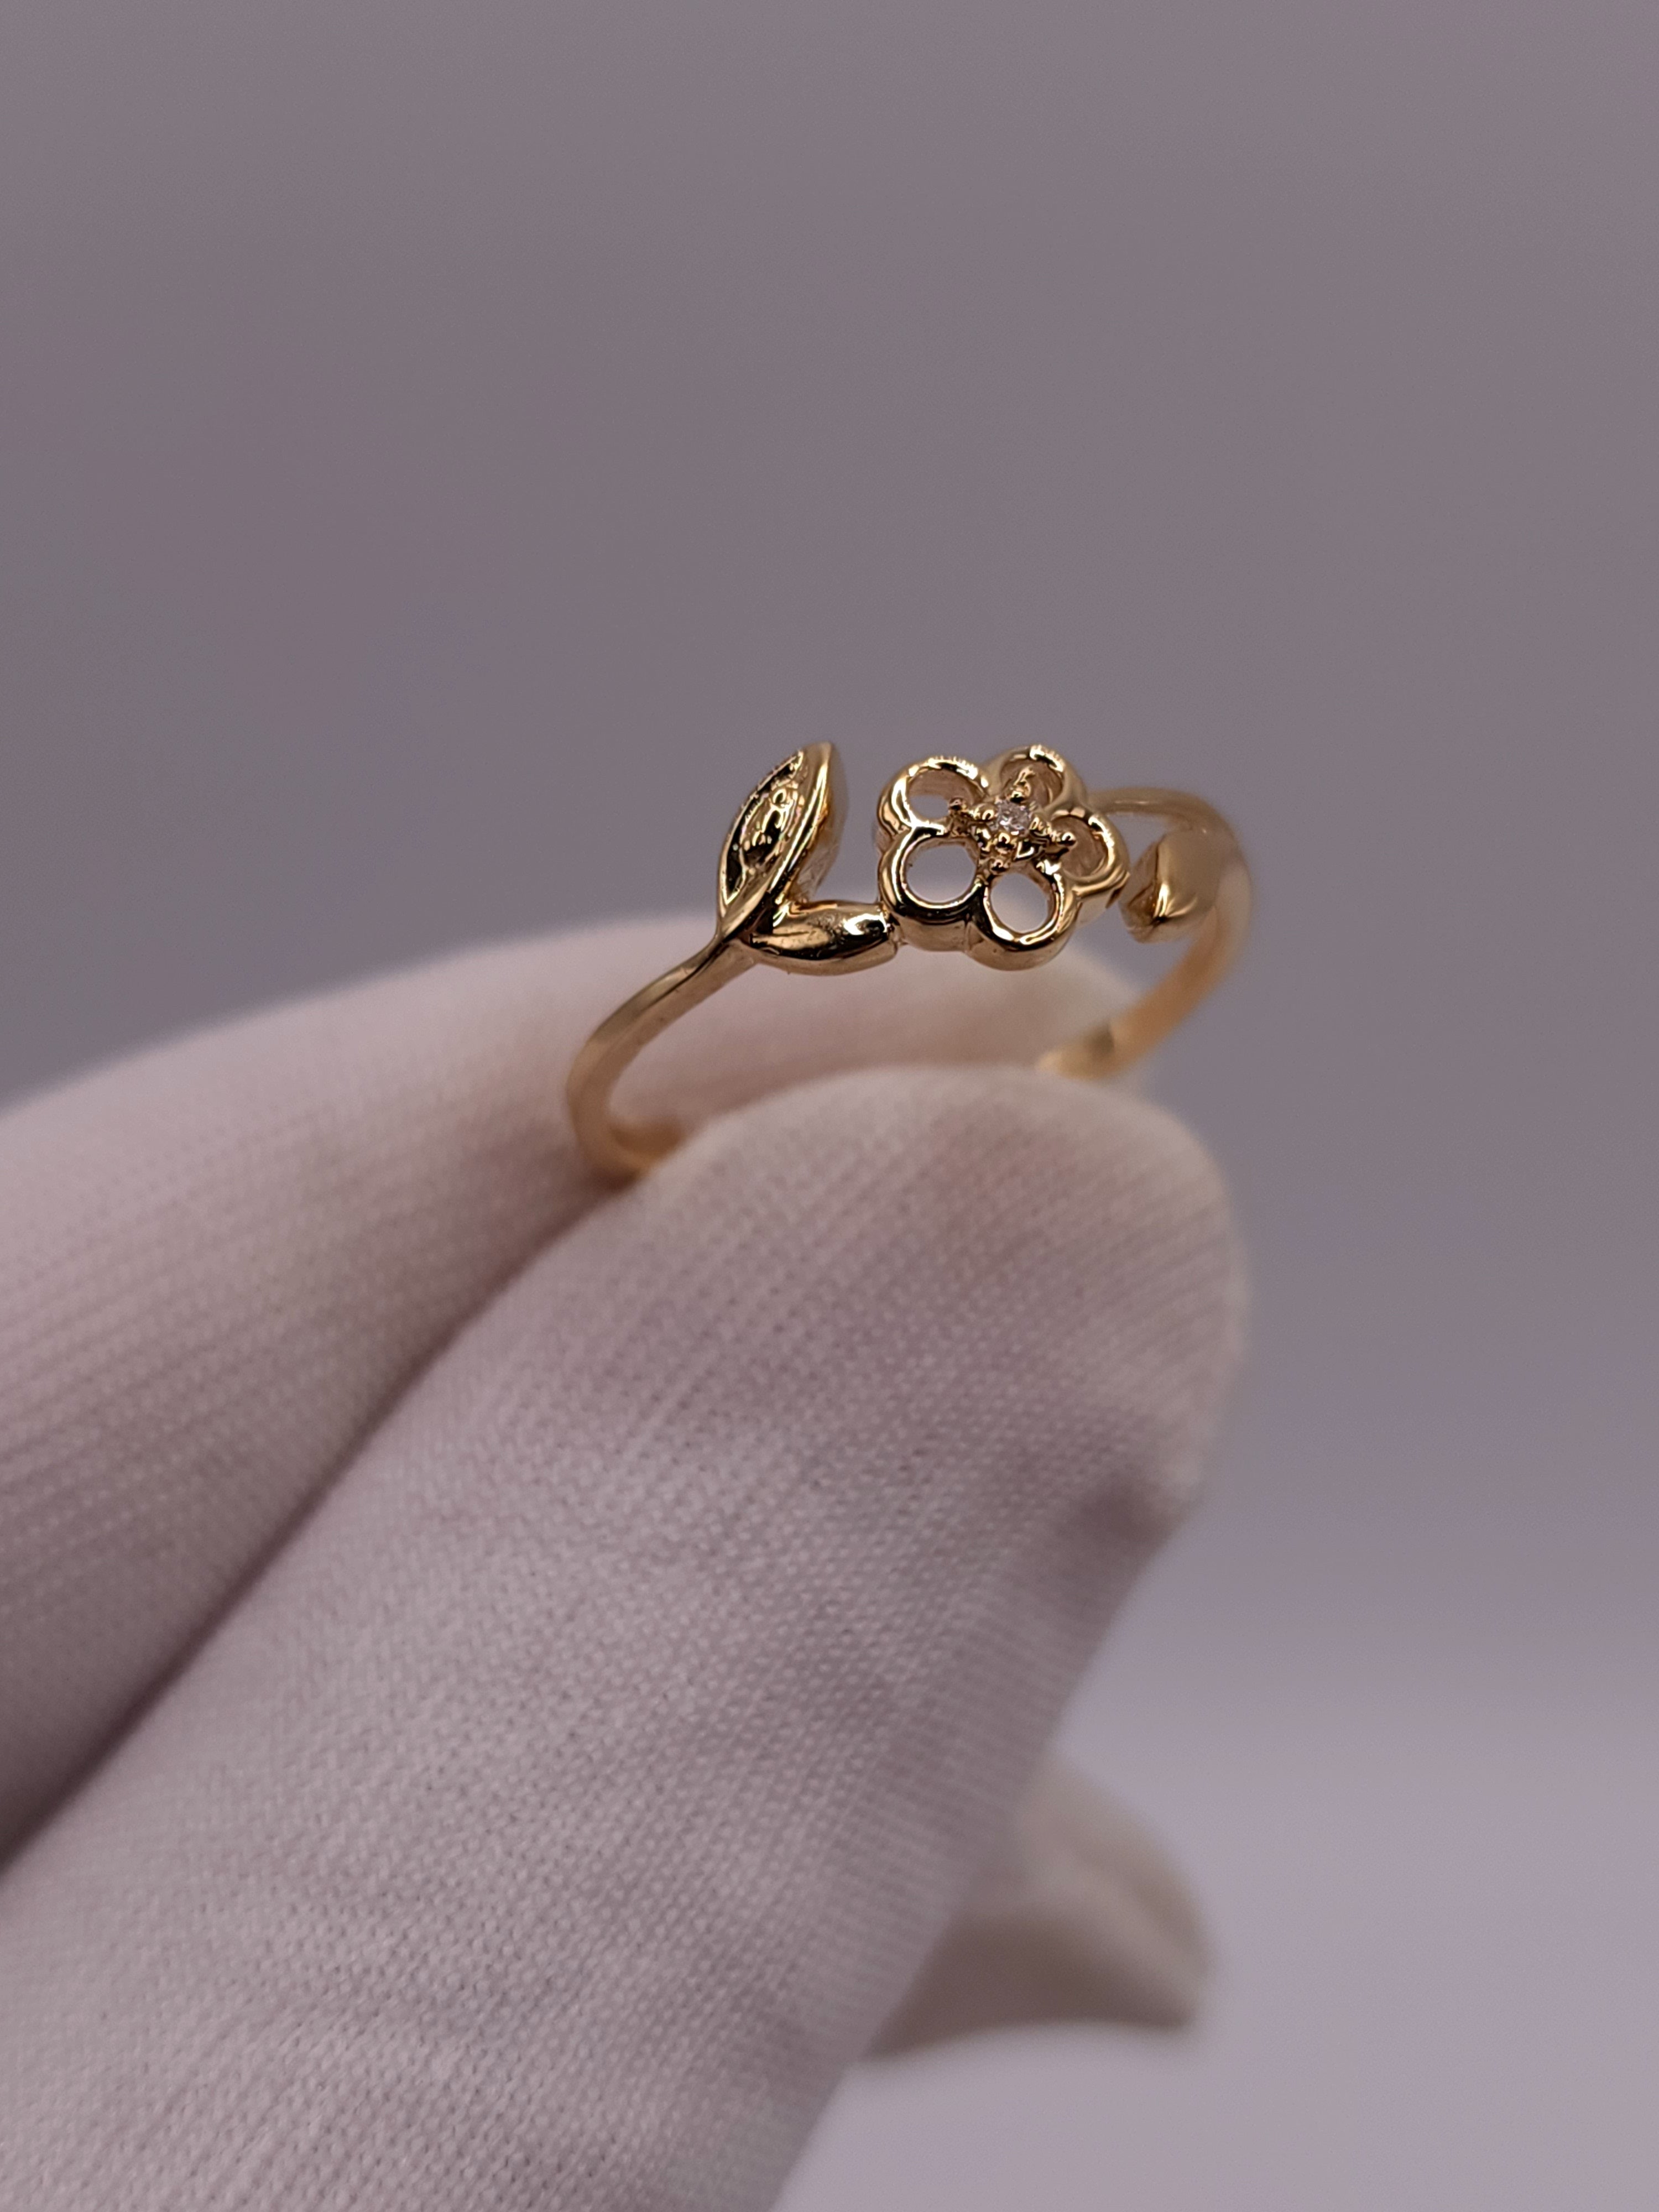 14Kt Gold Genuine Natural Diamond Flower Design Ring